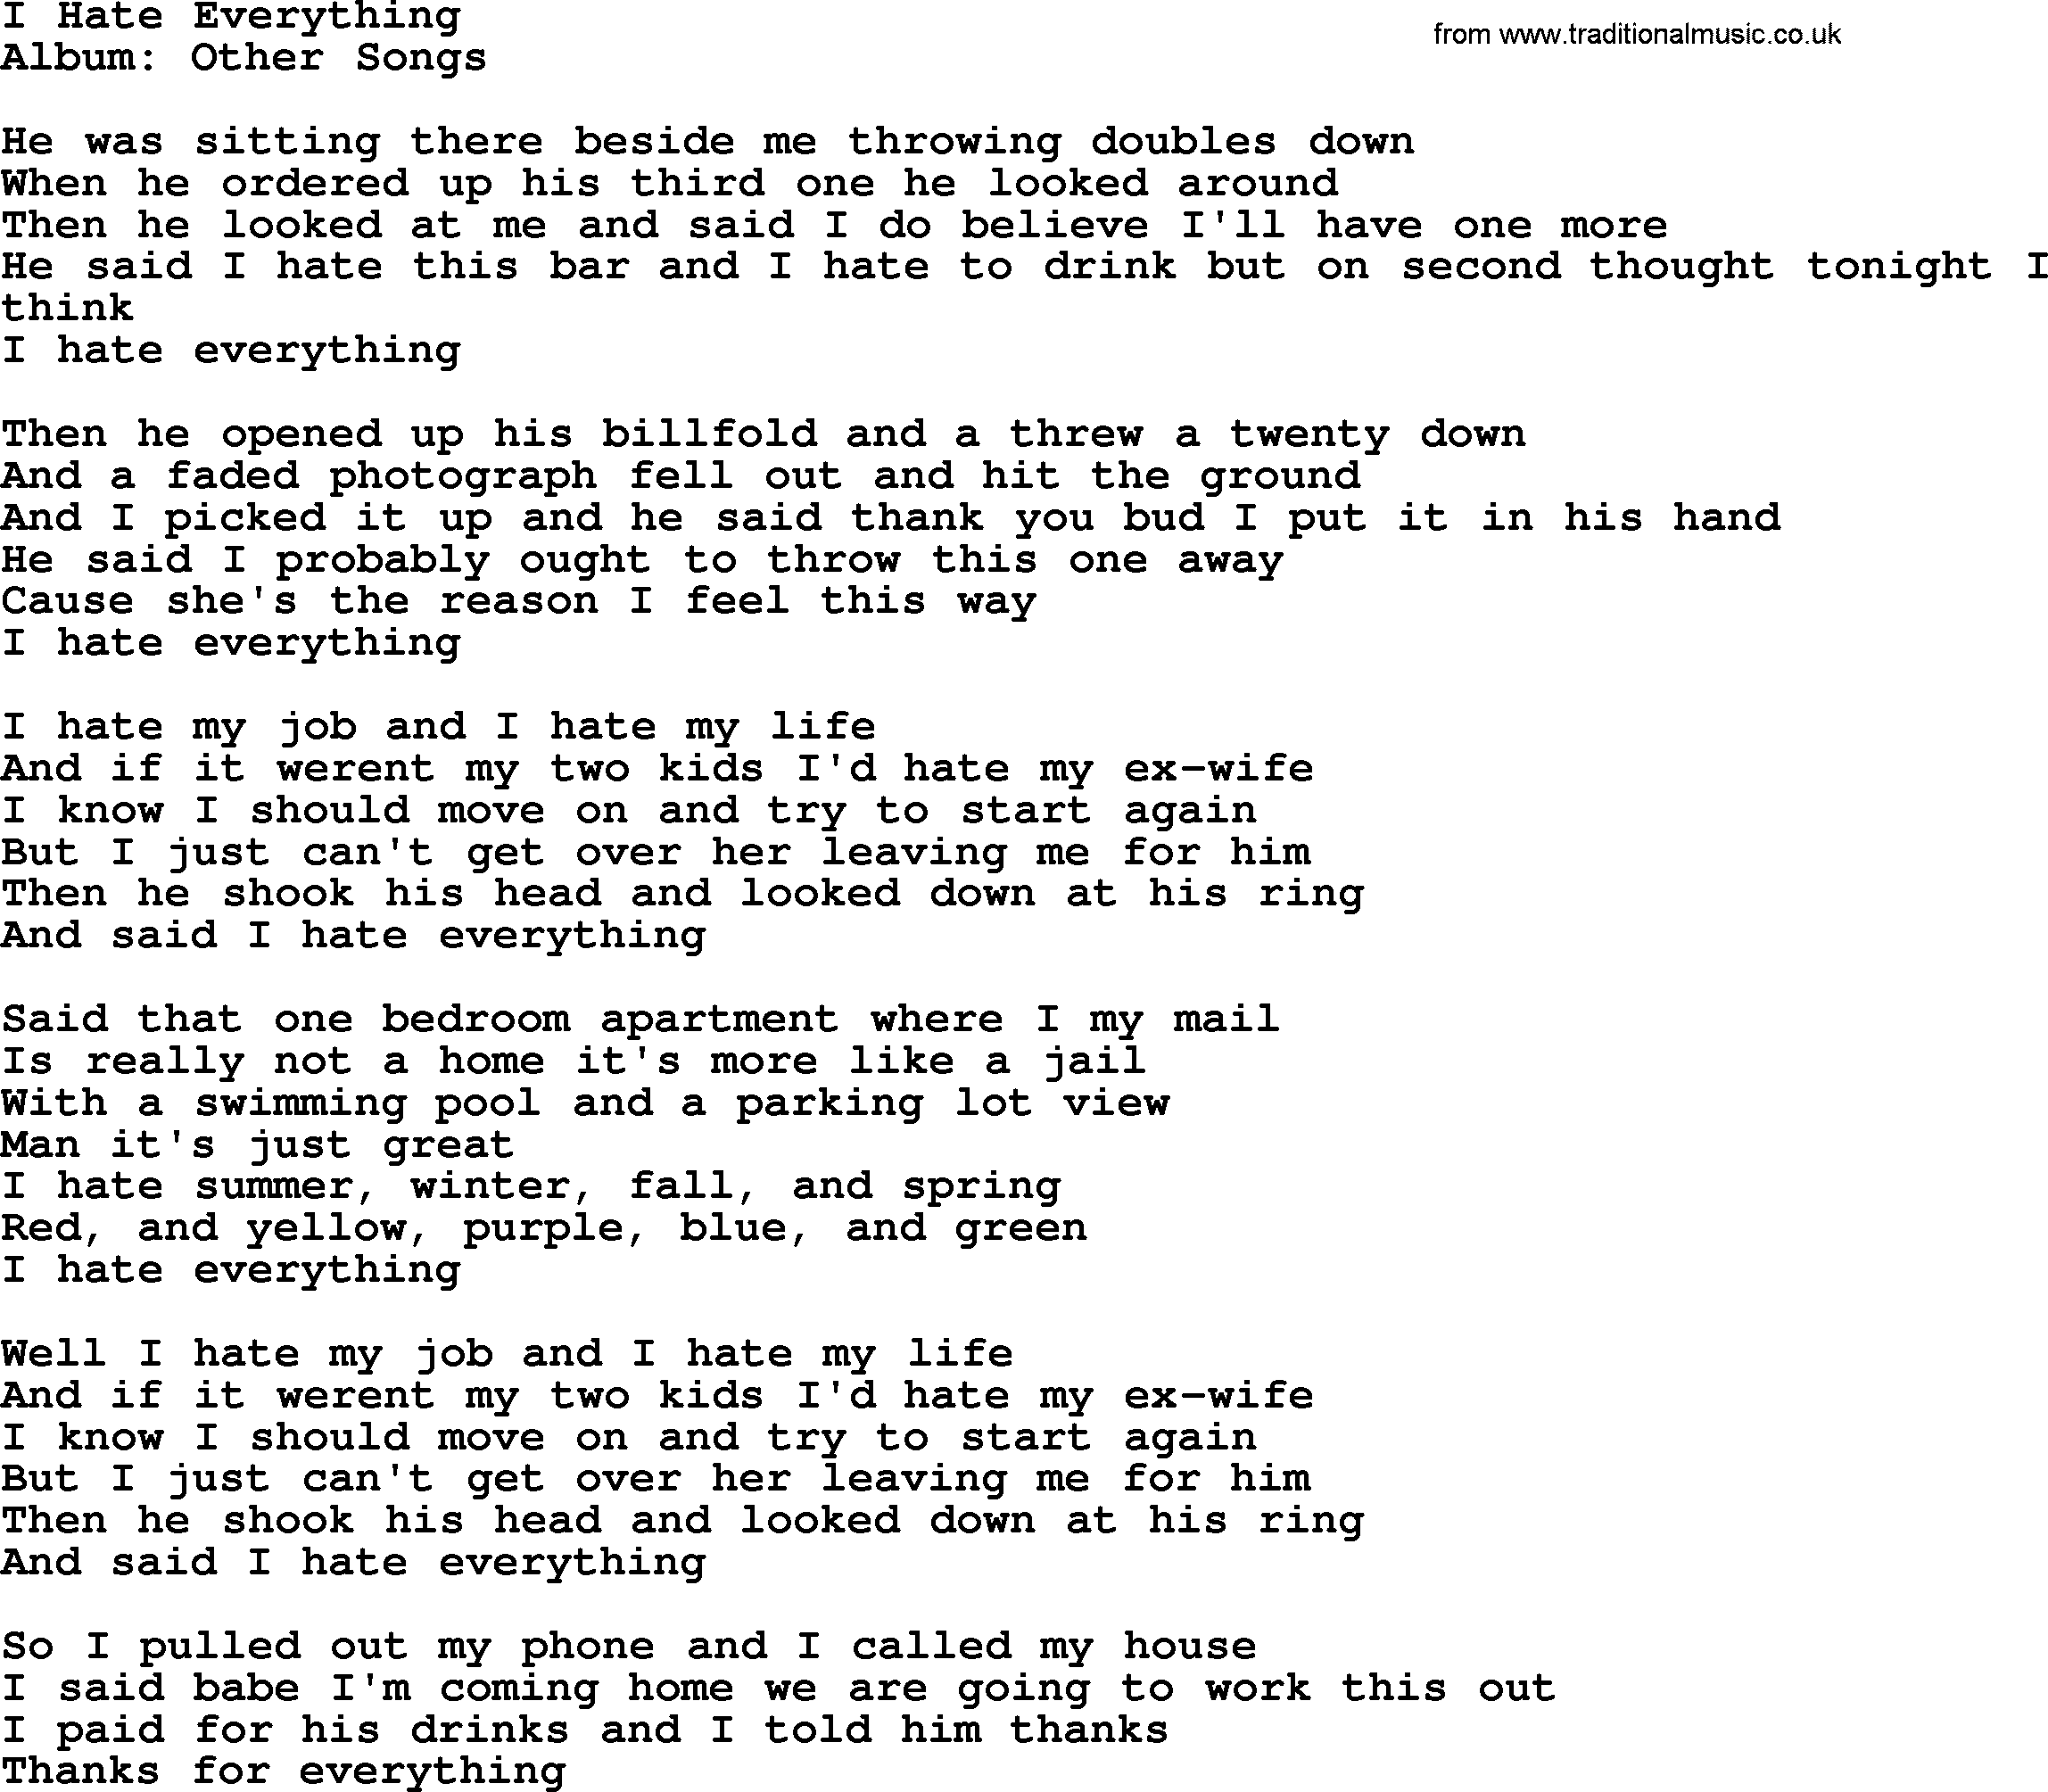 George Strait song: I Hate Everything, lyrics